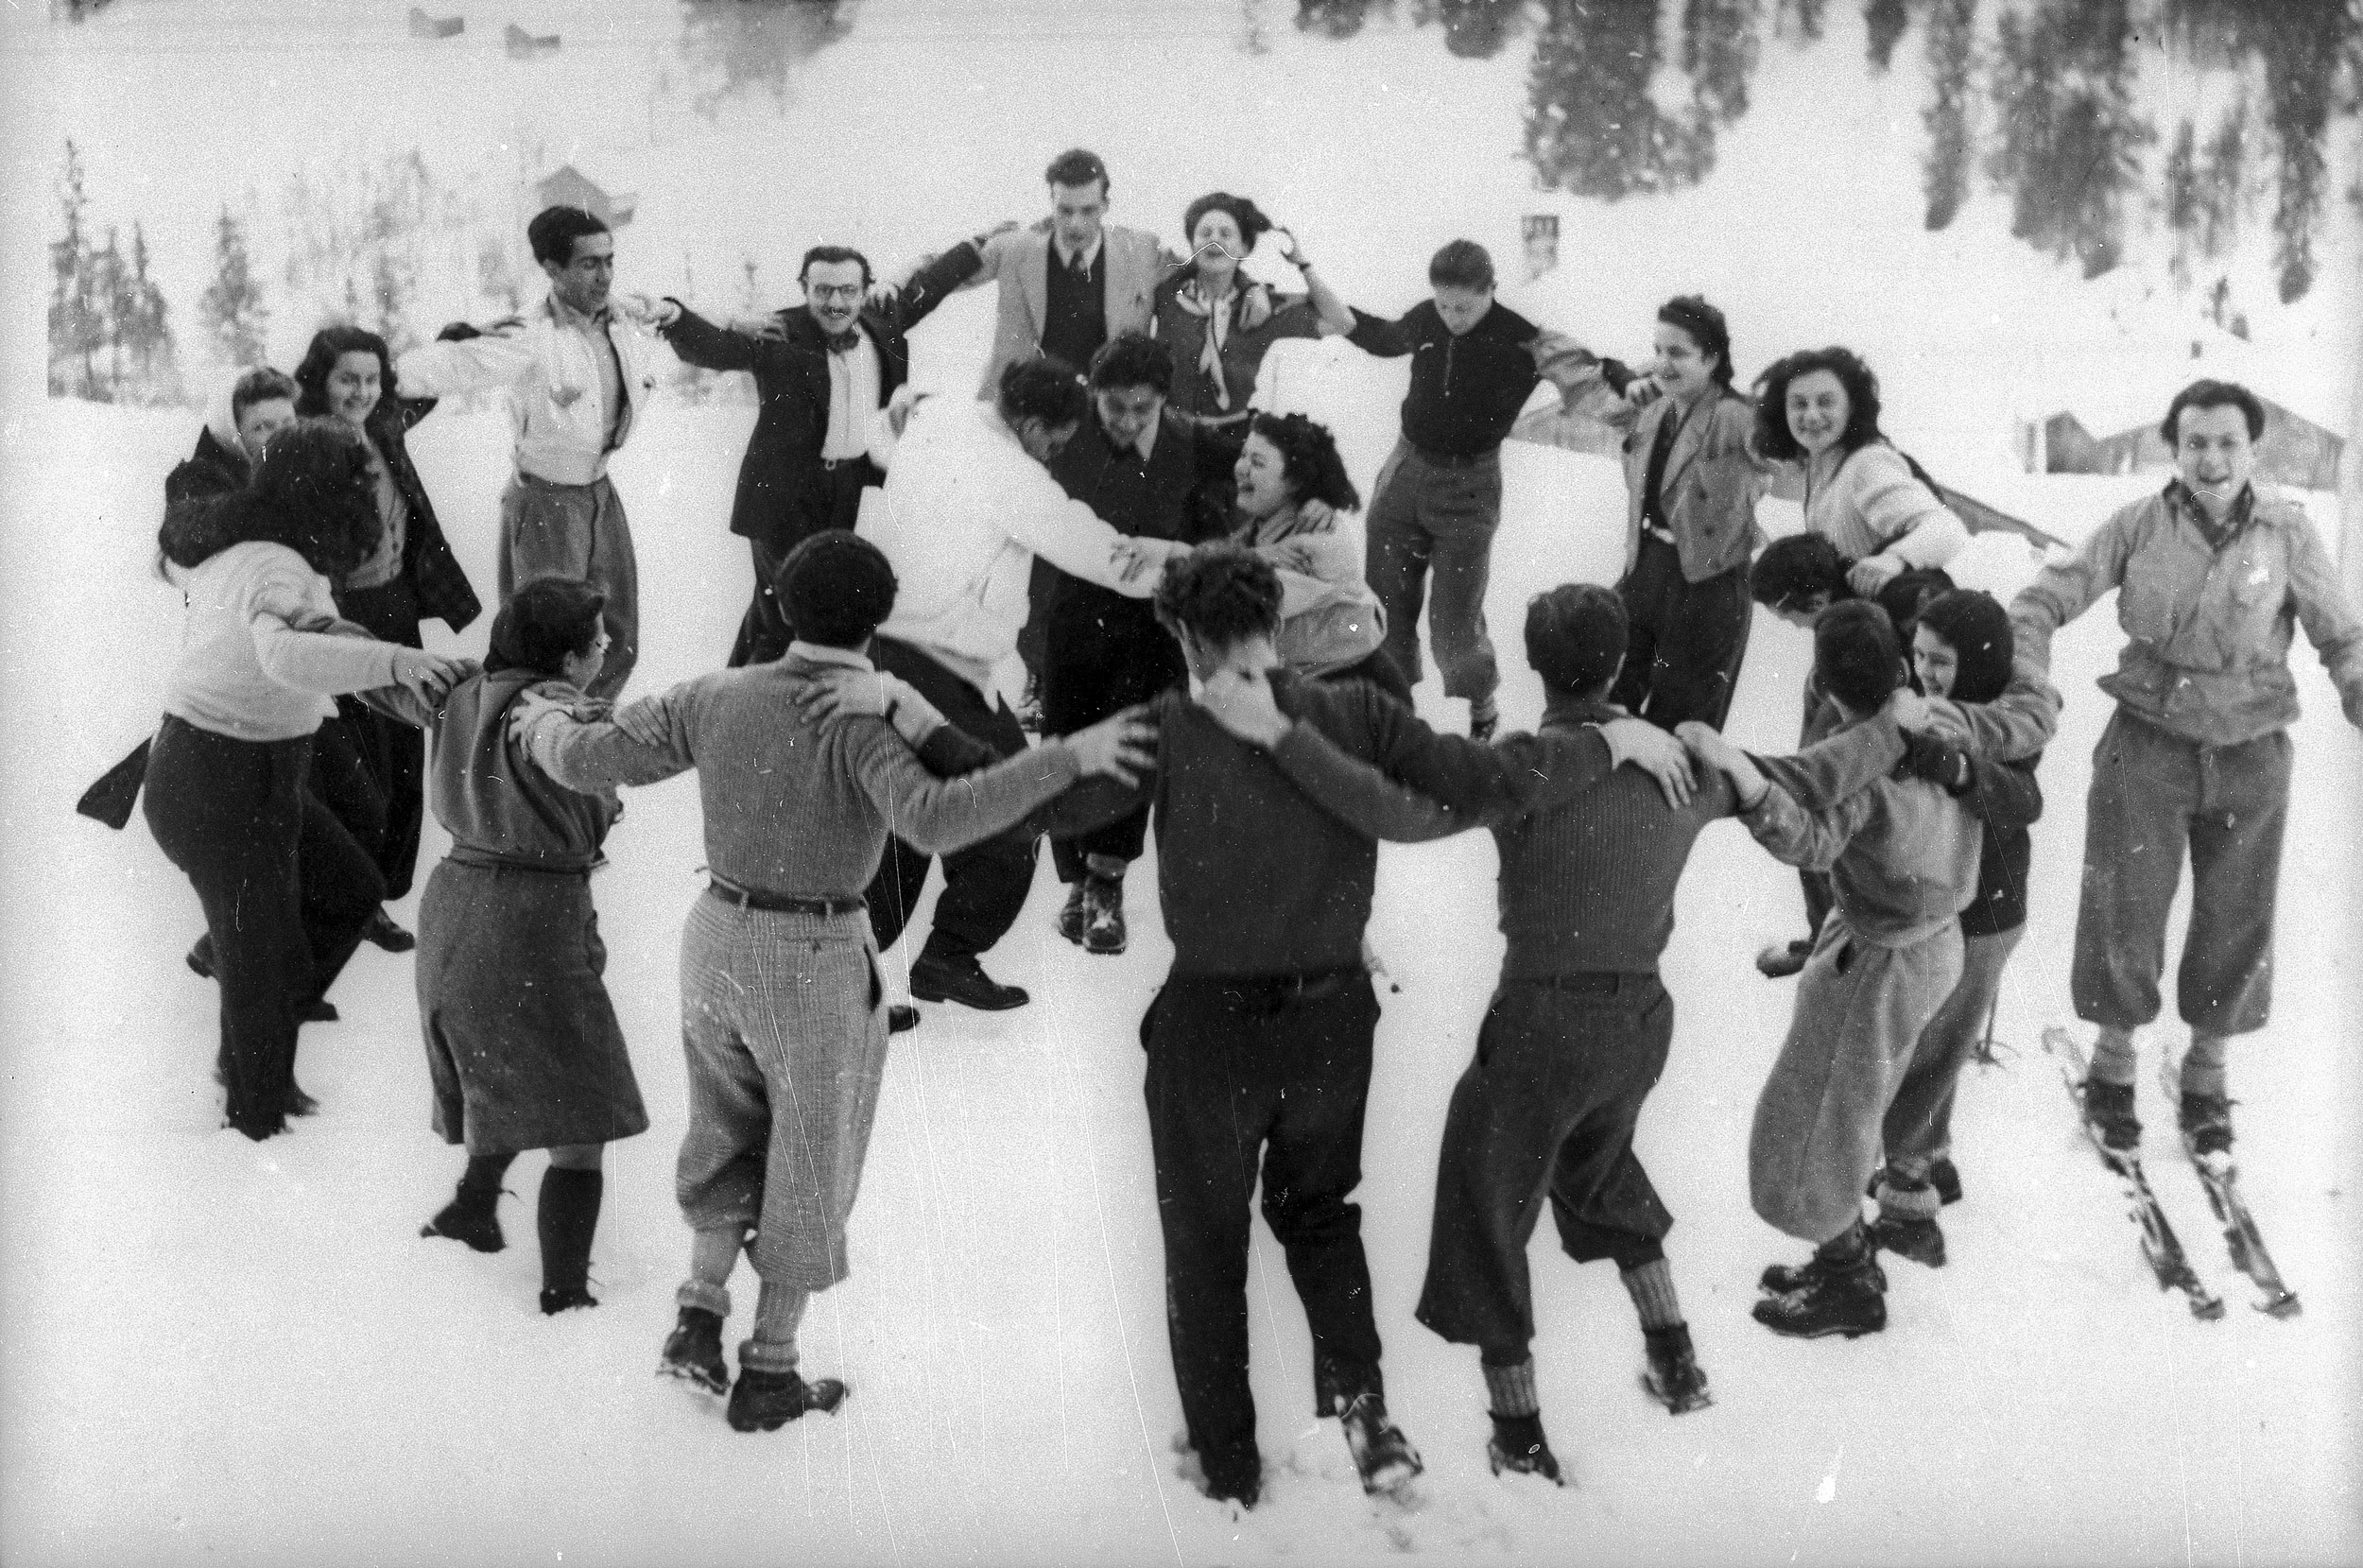 Hora-Tanz im Schnee, Gruppenbild, Engelberg, 1944